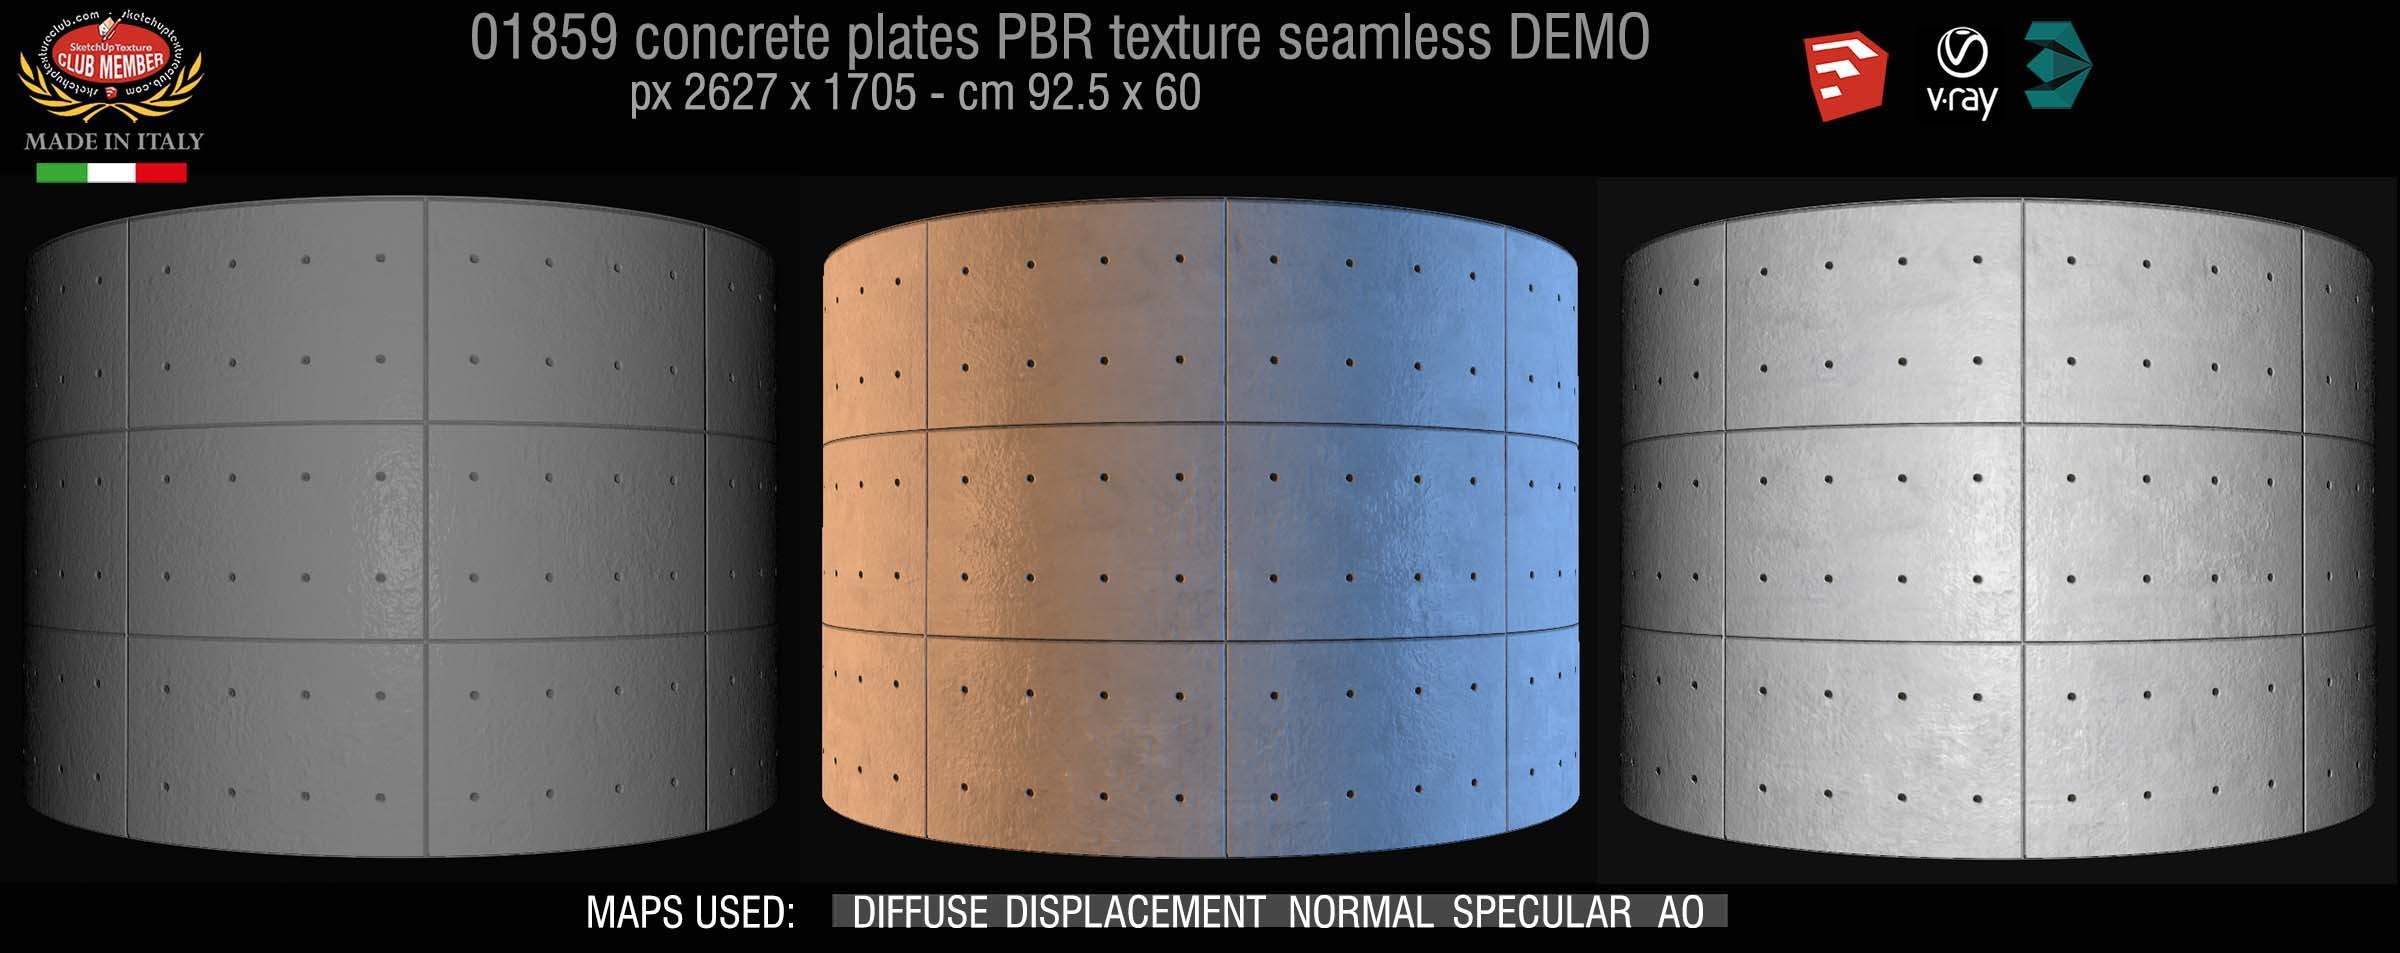 01859 Tadao Ando concrete plates PBR texture seamless DEMO